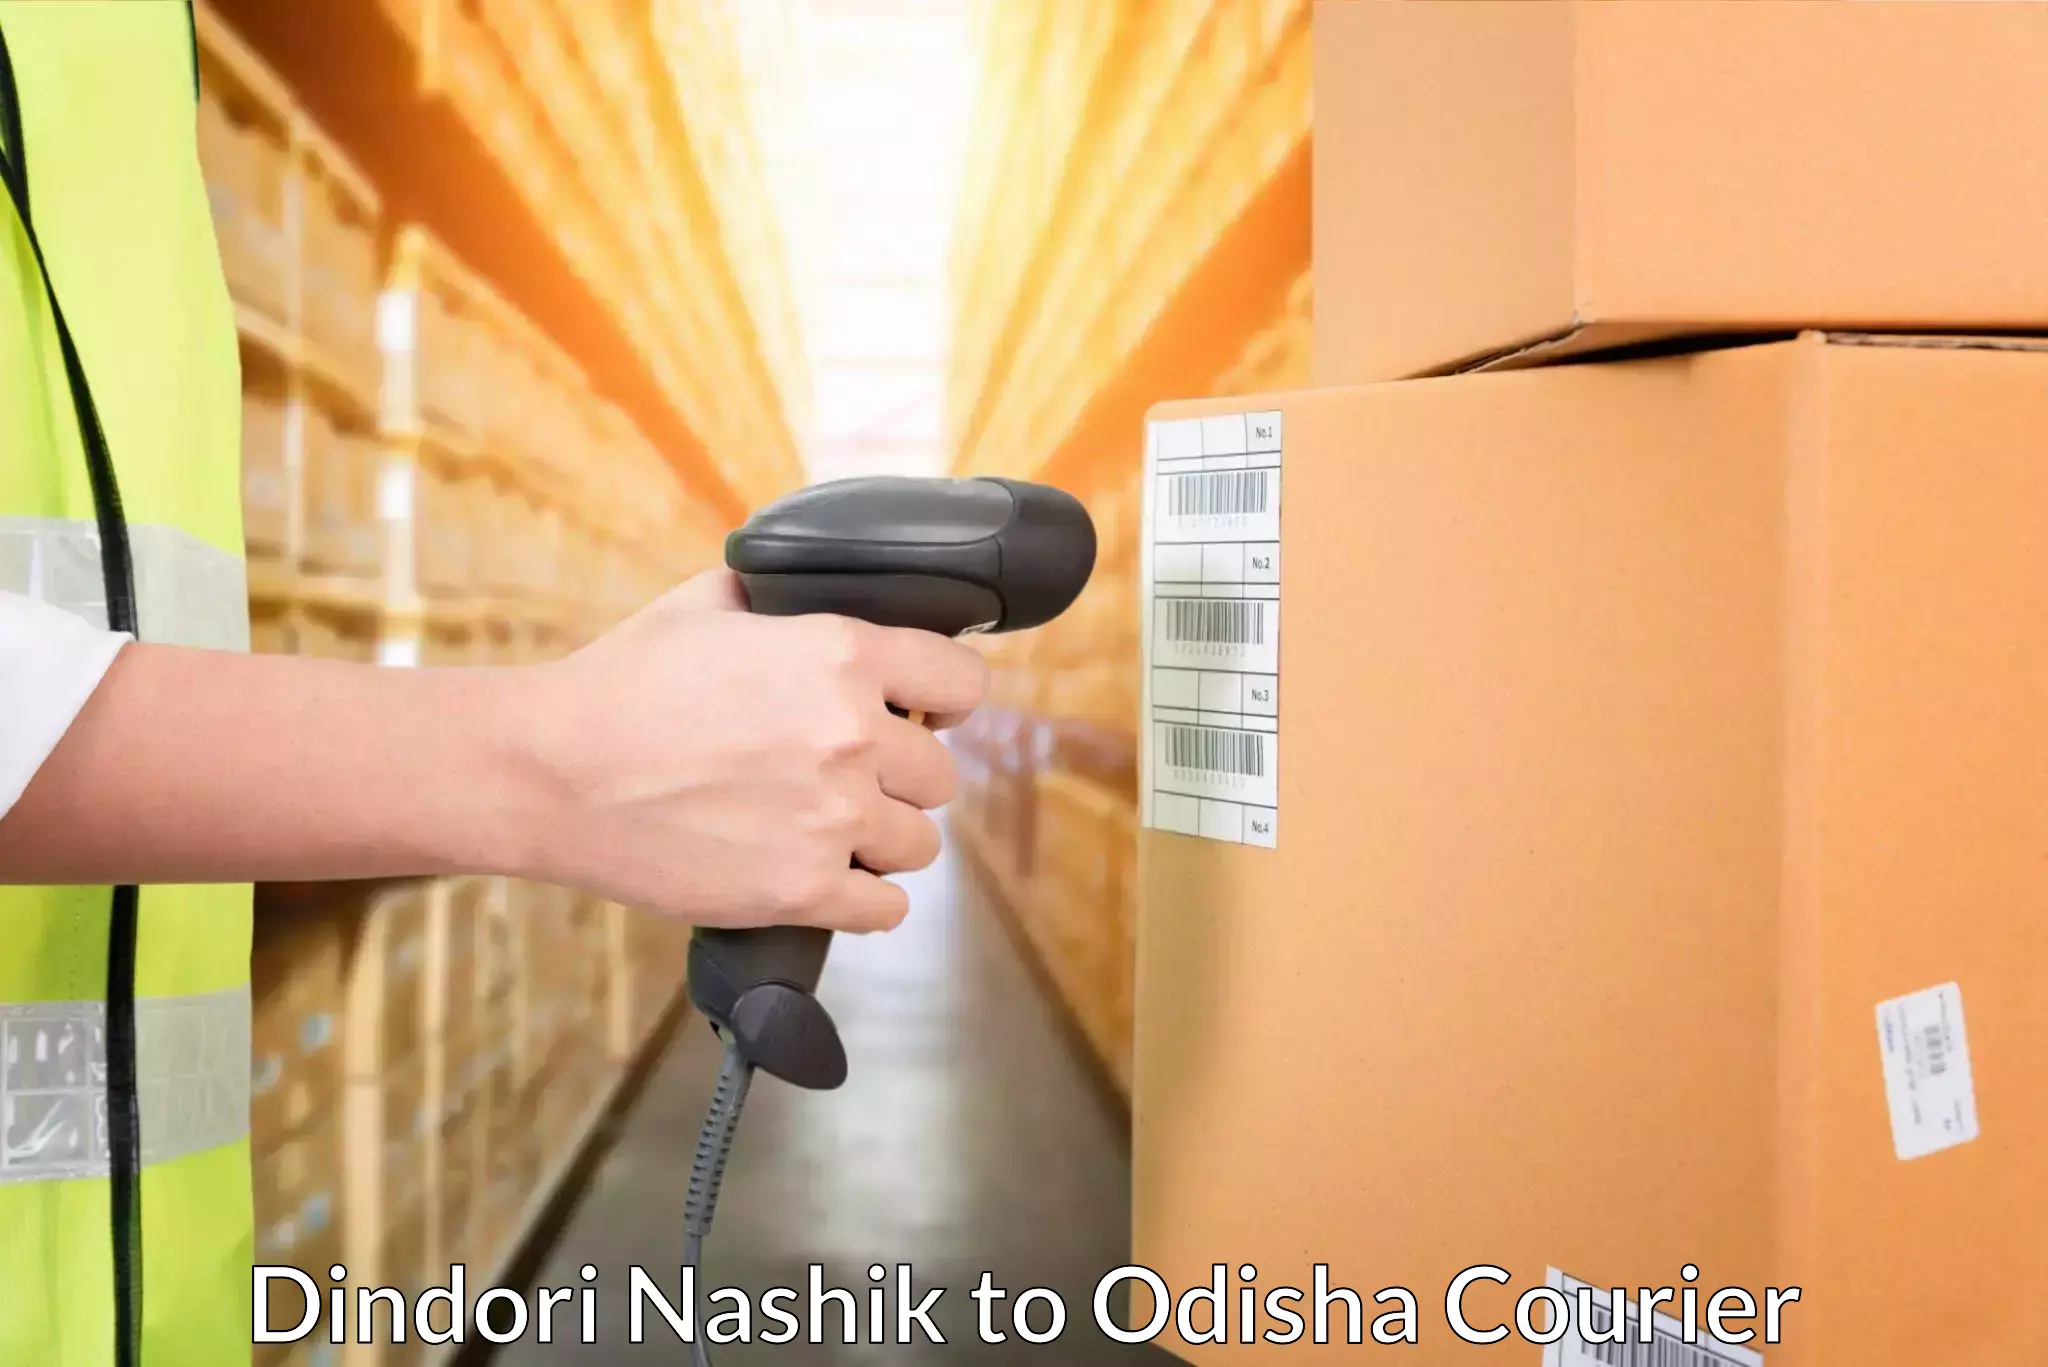 Cash on delivery service Dindori Nashik to Bheden